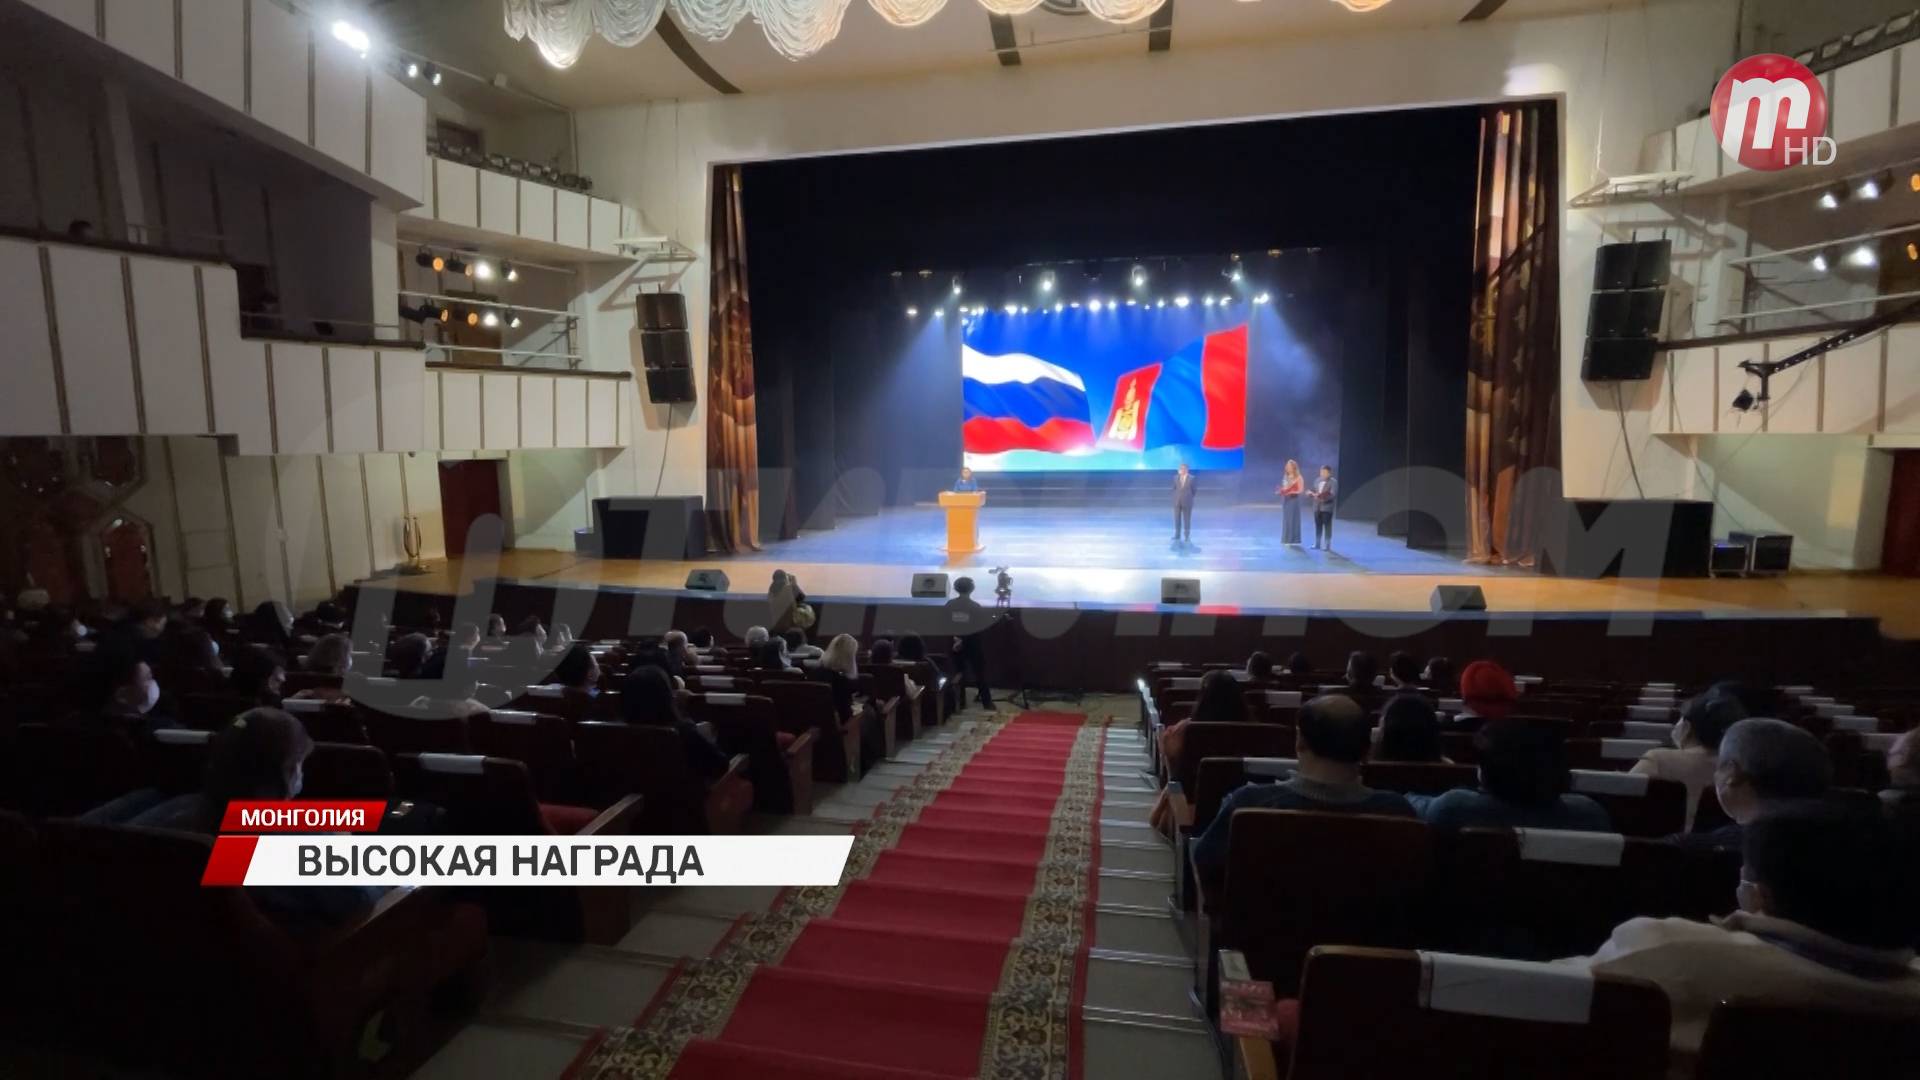 Русский Дом в Улан-Баторе удостоен высшей государственной награды - ордена «Полярная звезда»